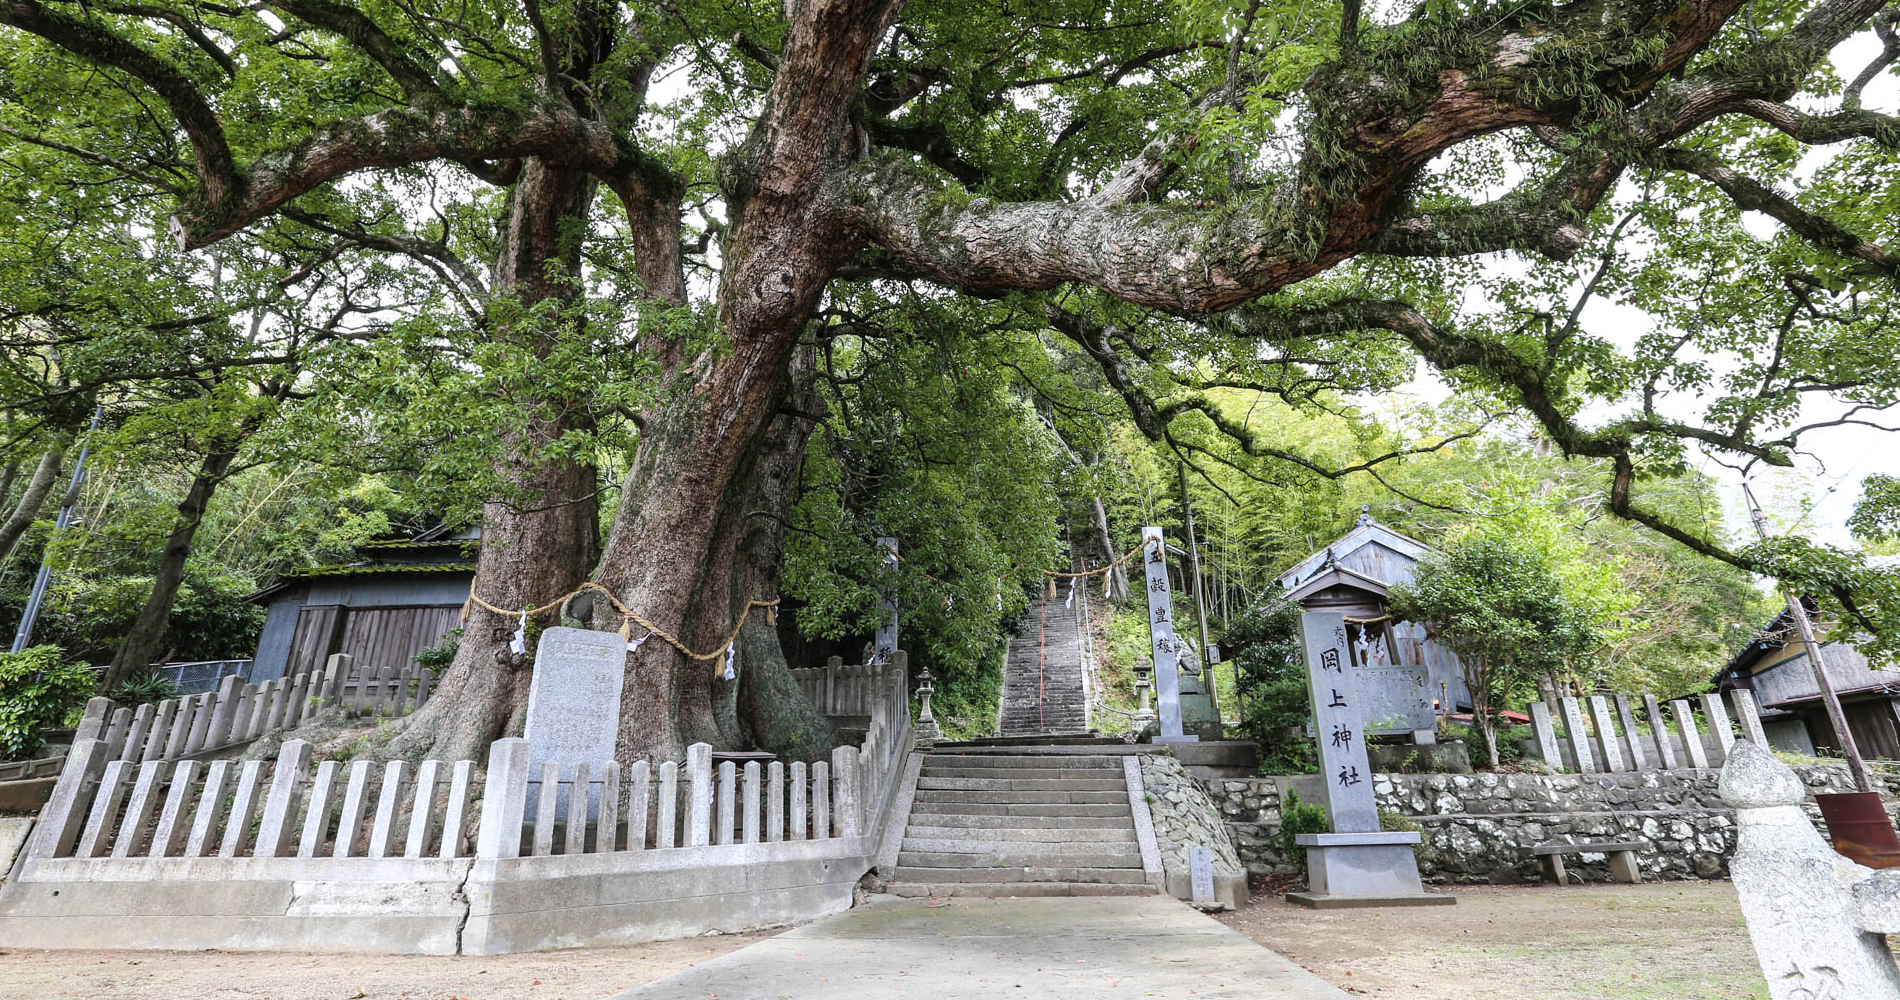 Escalier menant à un sanctuaire shinto : Suwa Jinja